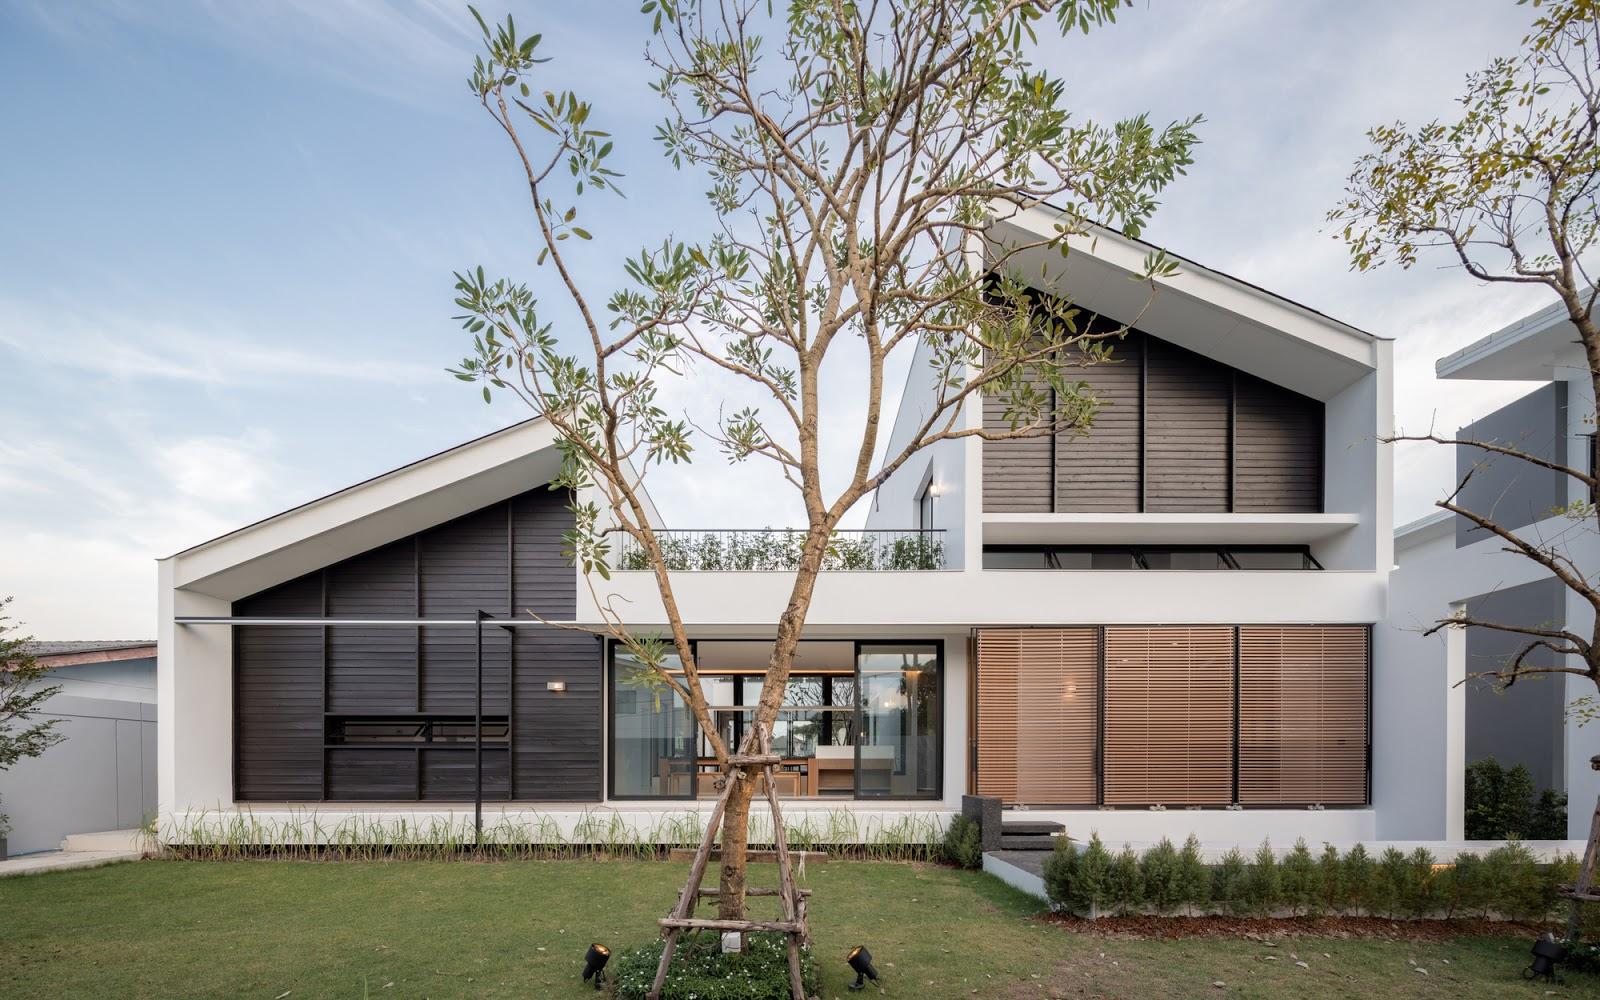 15 Desain Rumah Minimalis 2 Lantai Yang Mewah Dan Terbaik Mustika Land